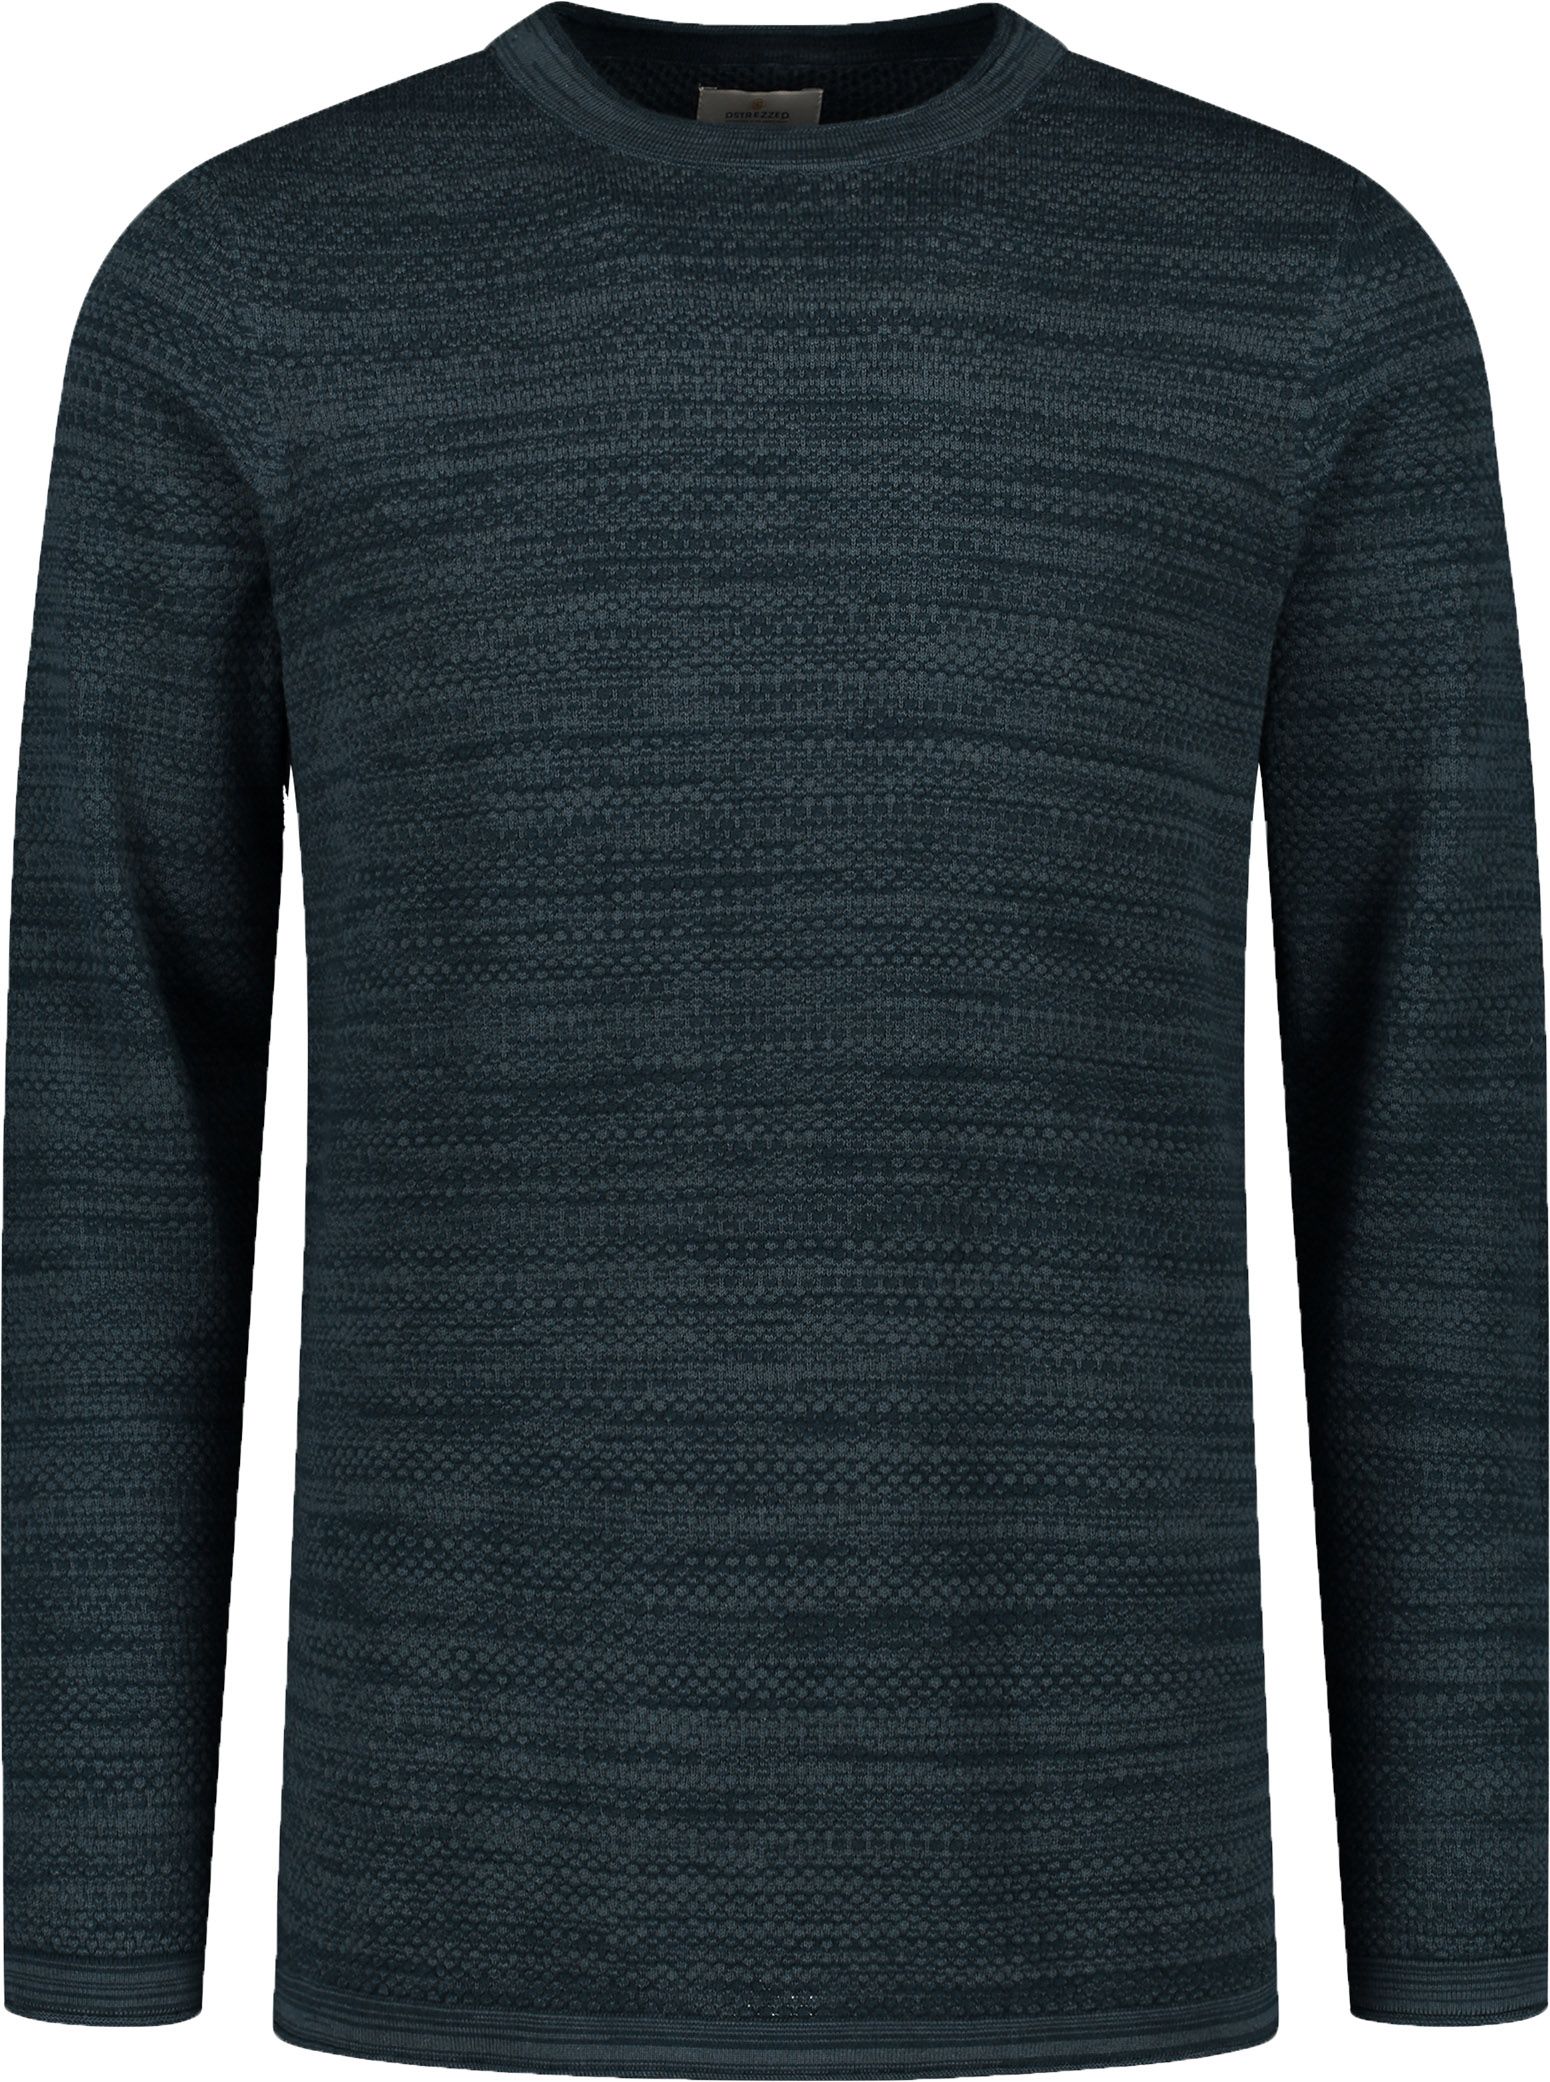 Dstrezzed Sweater Dark Blue Dark Blue size L